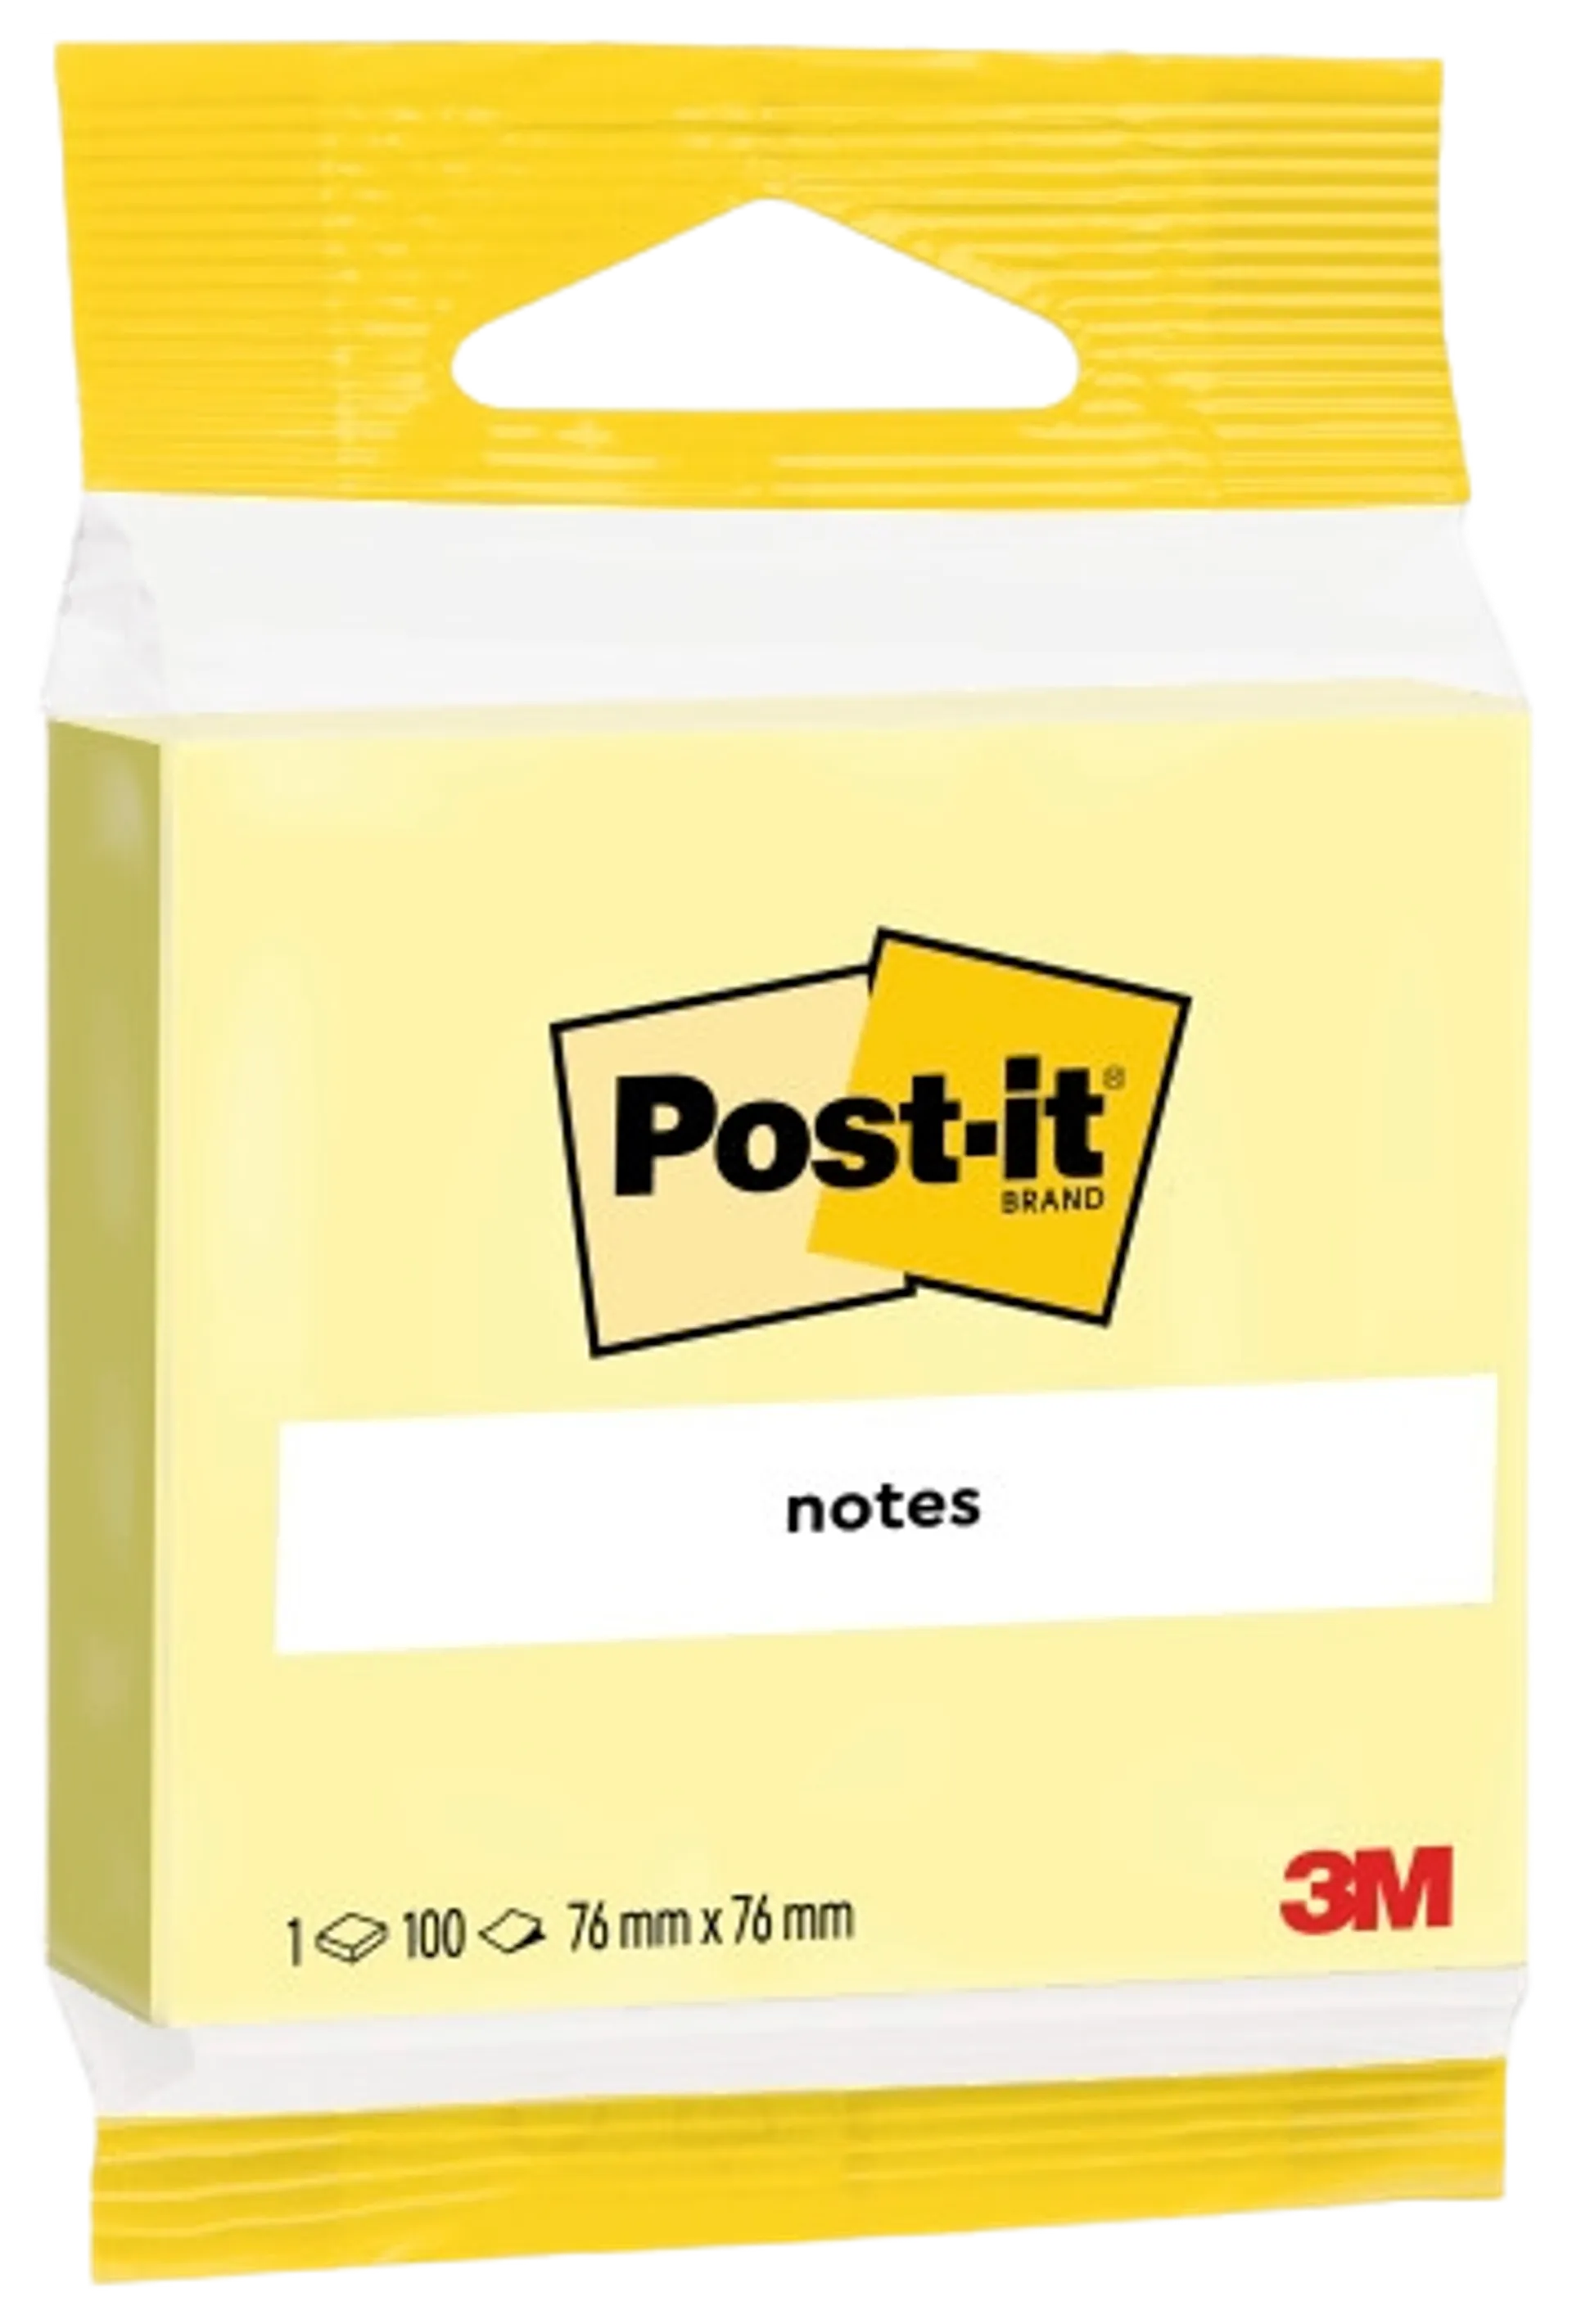 Post-it® viestilaput, Canary Yellow, 1 lehtiö, 76 mm x 76 mm, piikkipakattu, 100% PEFC CH18/0914